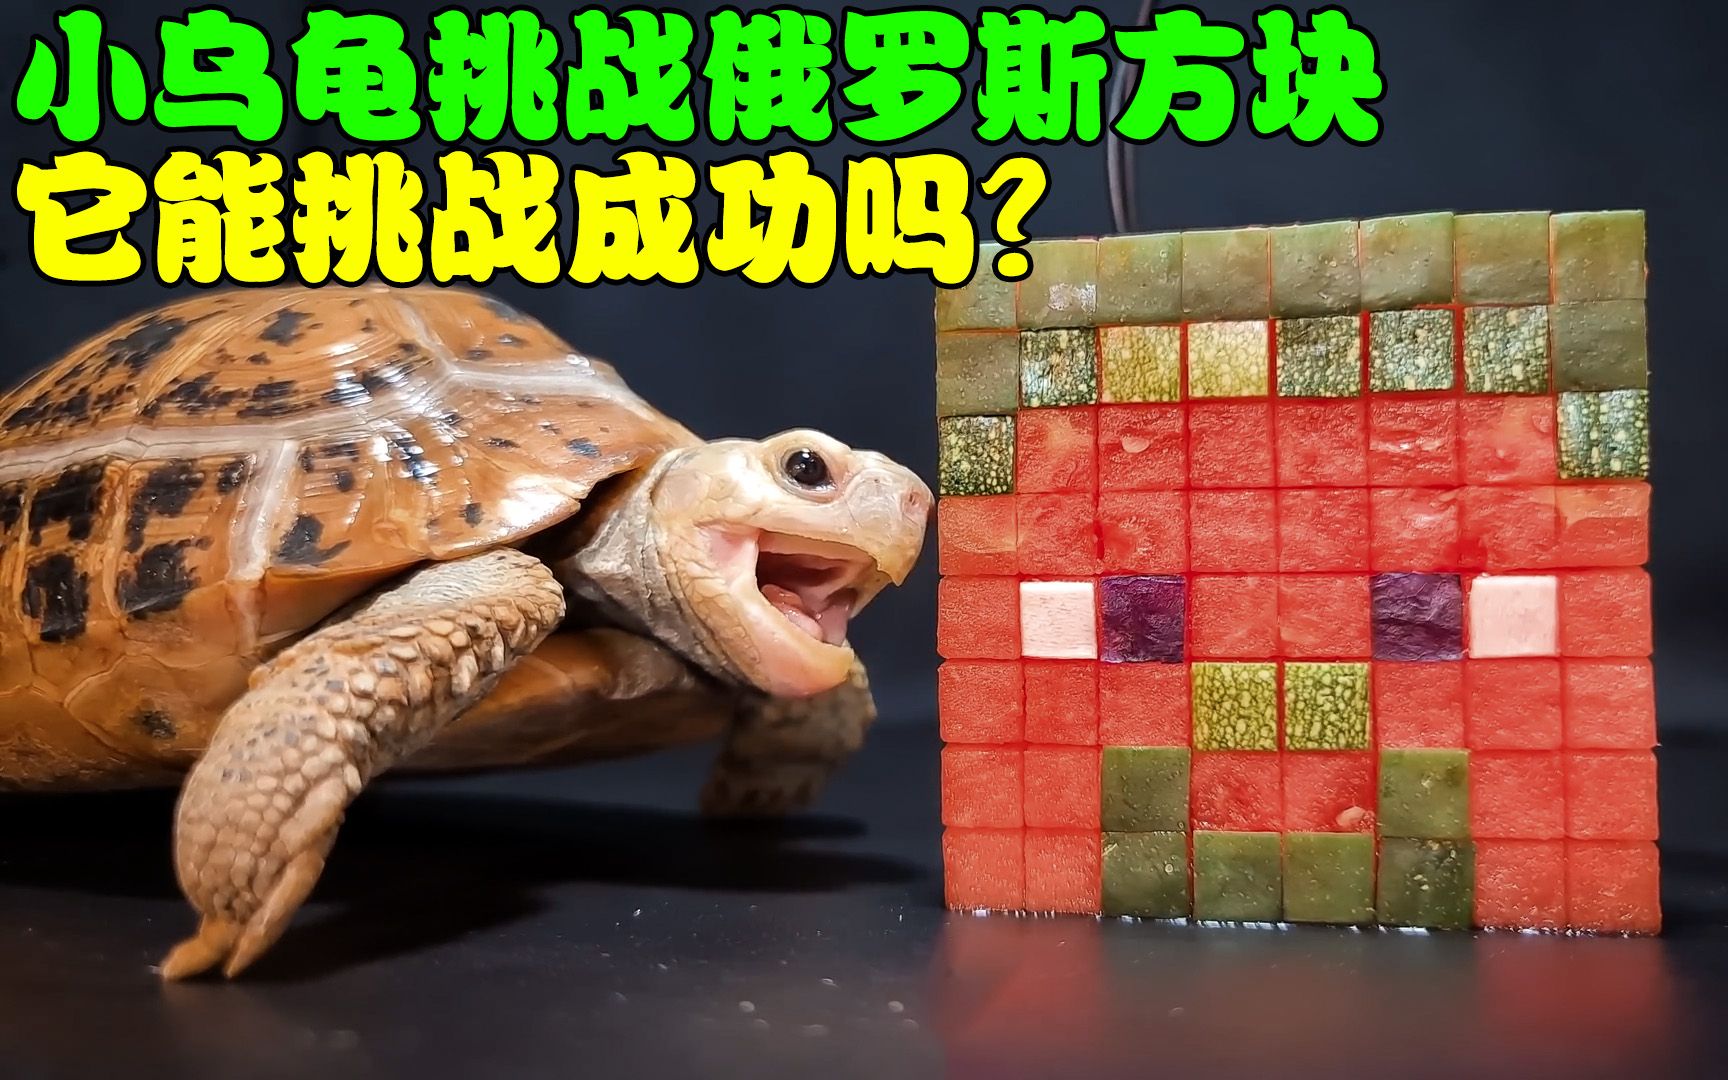 小乌龟挑战俄罗斯方块，过程中鼻子却被堵住，它能挑战成功吗？